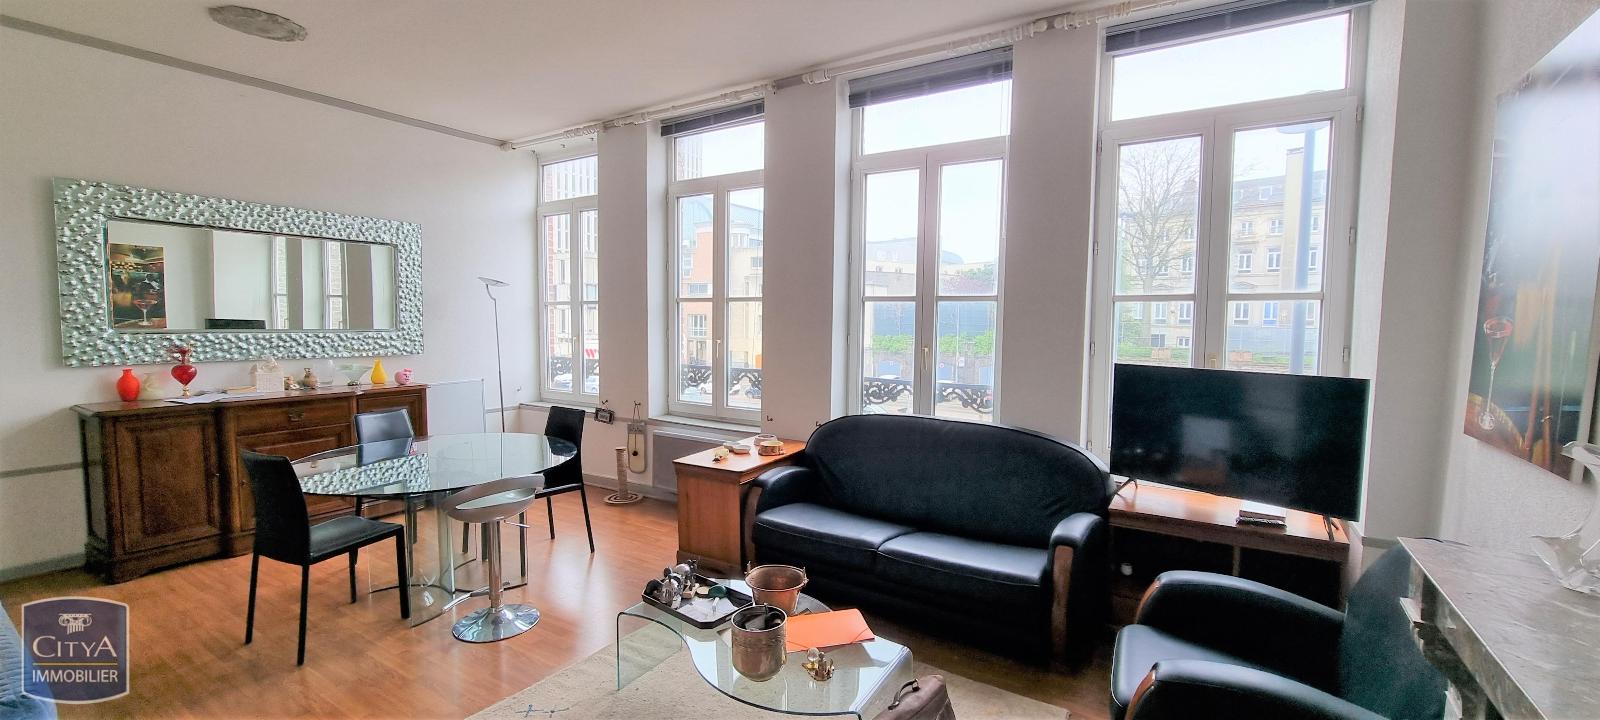 Vente Appartement 51m² 2 Pièces à Lille (59000) - Citya